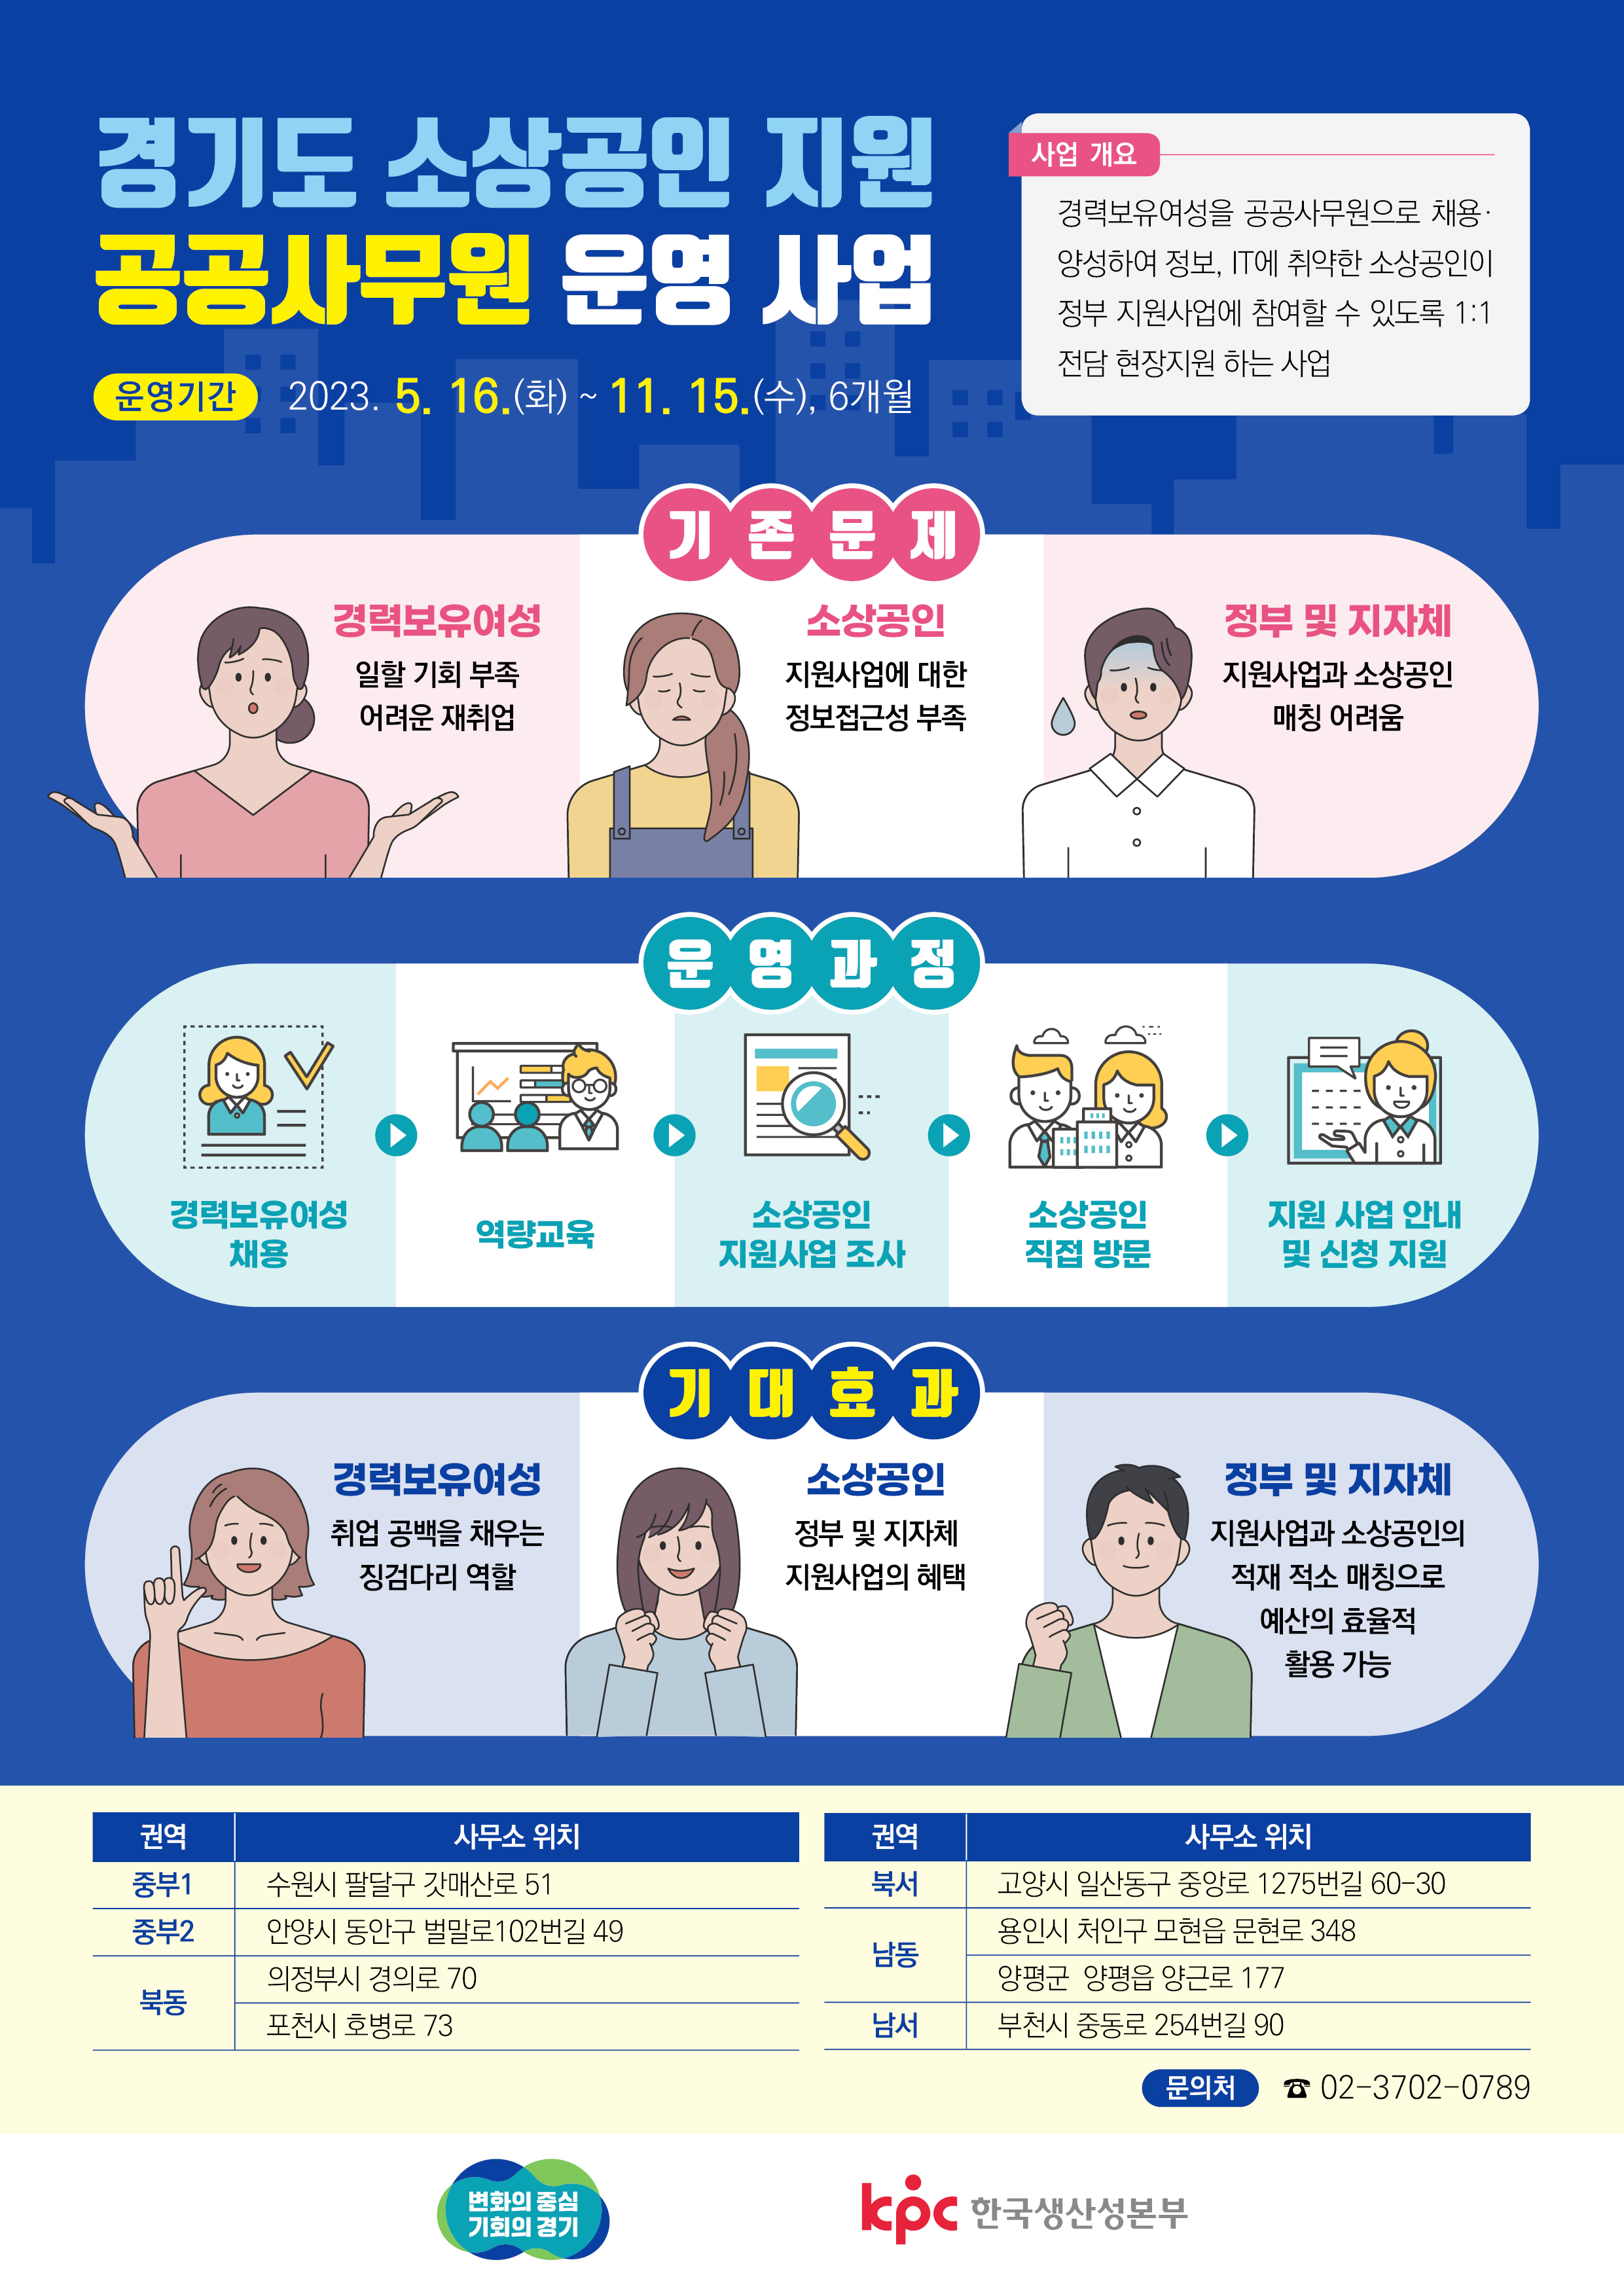 2023년 경기도 소상공인 지원 공공사무원 운영 사업 홍보 포스터.jpg